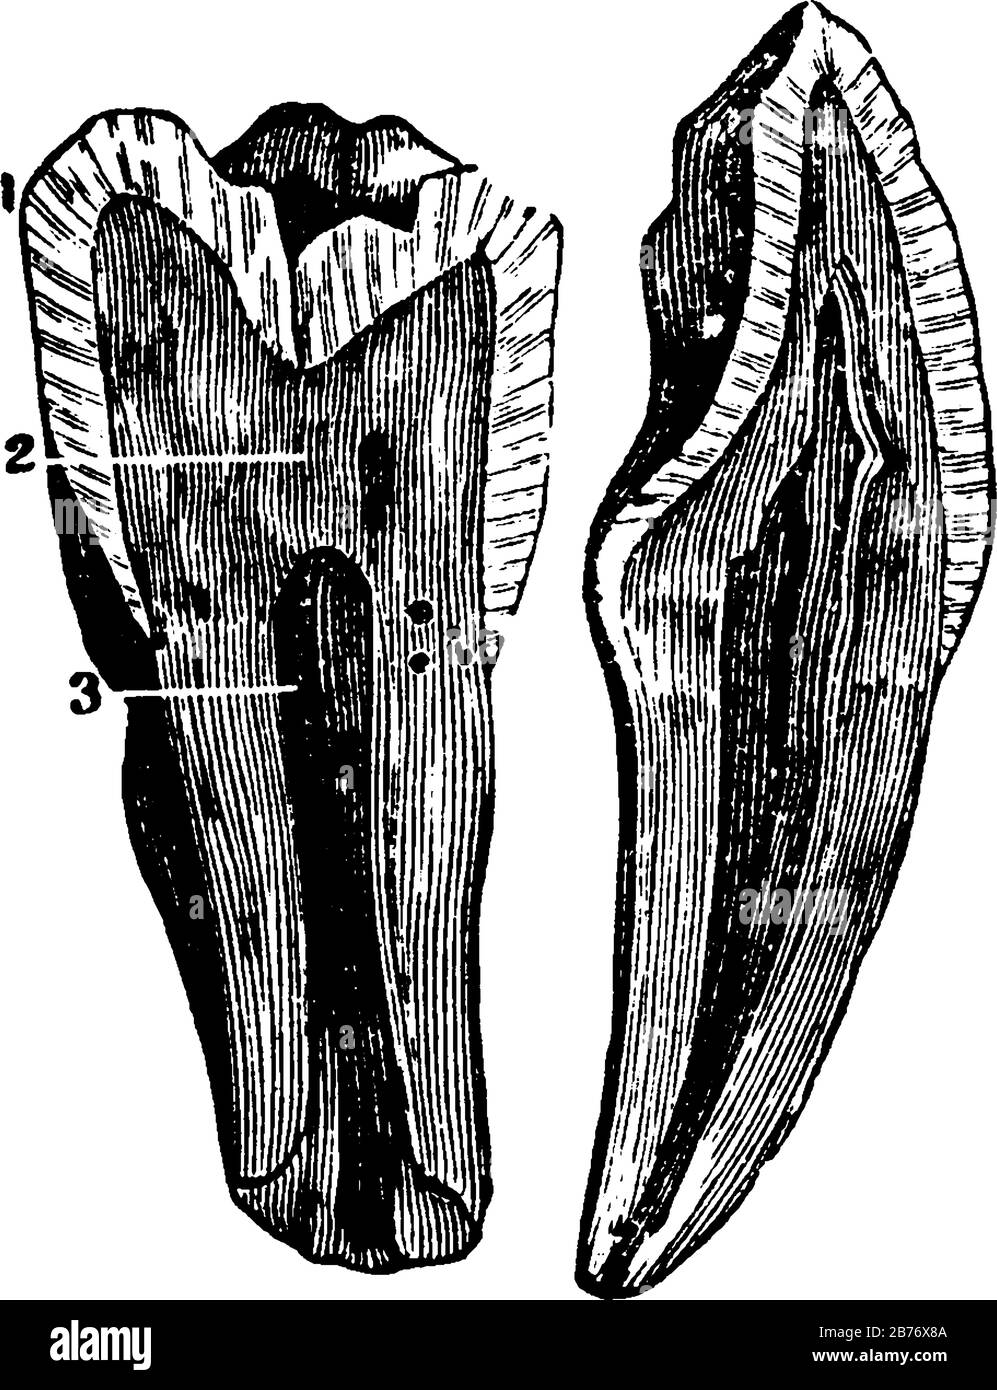 Die Innenansicht eines Zahns, der von oben oder von der Krone bis zu den Spitzen der Wurzel durchschnitten wird, mit den beschrifteten Teilen, 1, Email; 2, Dentin; 3, Fruchtfleisch, Vinta Stock Vektor